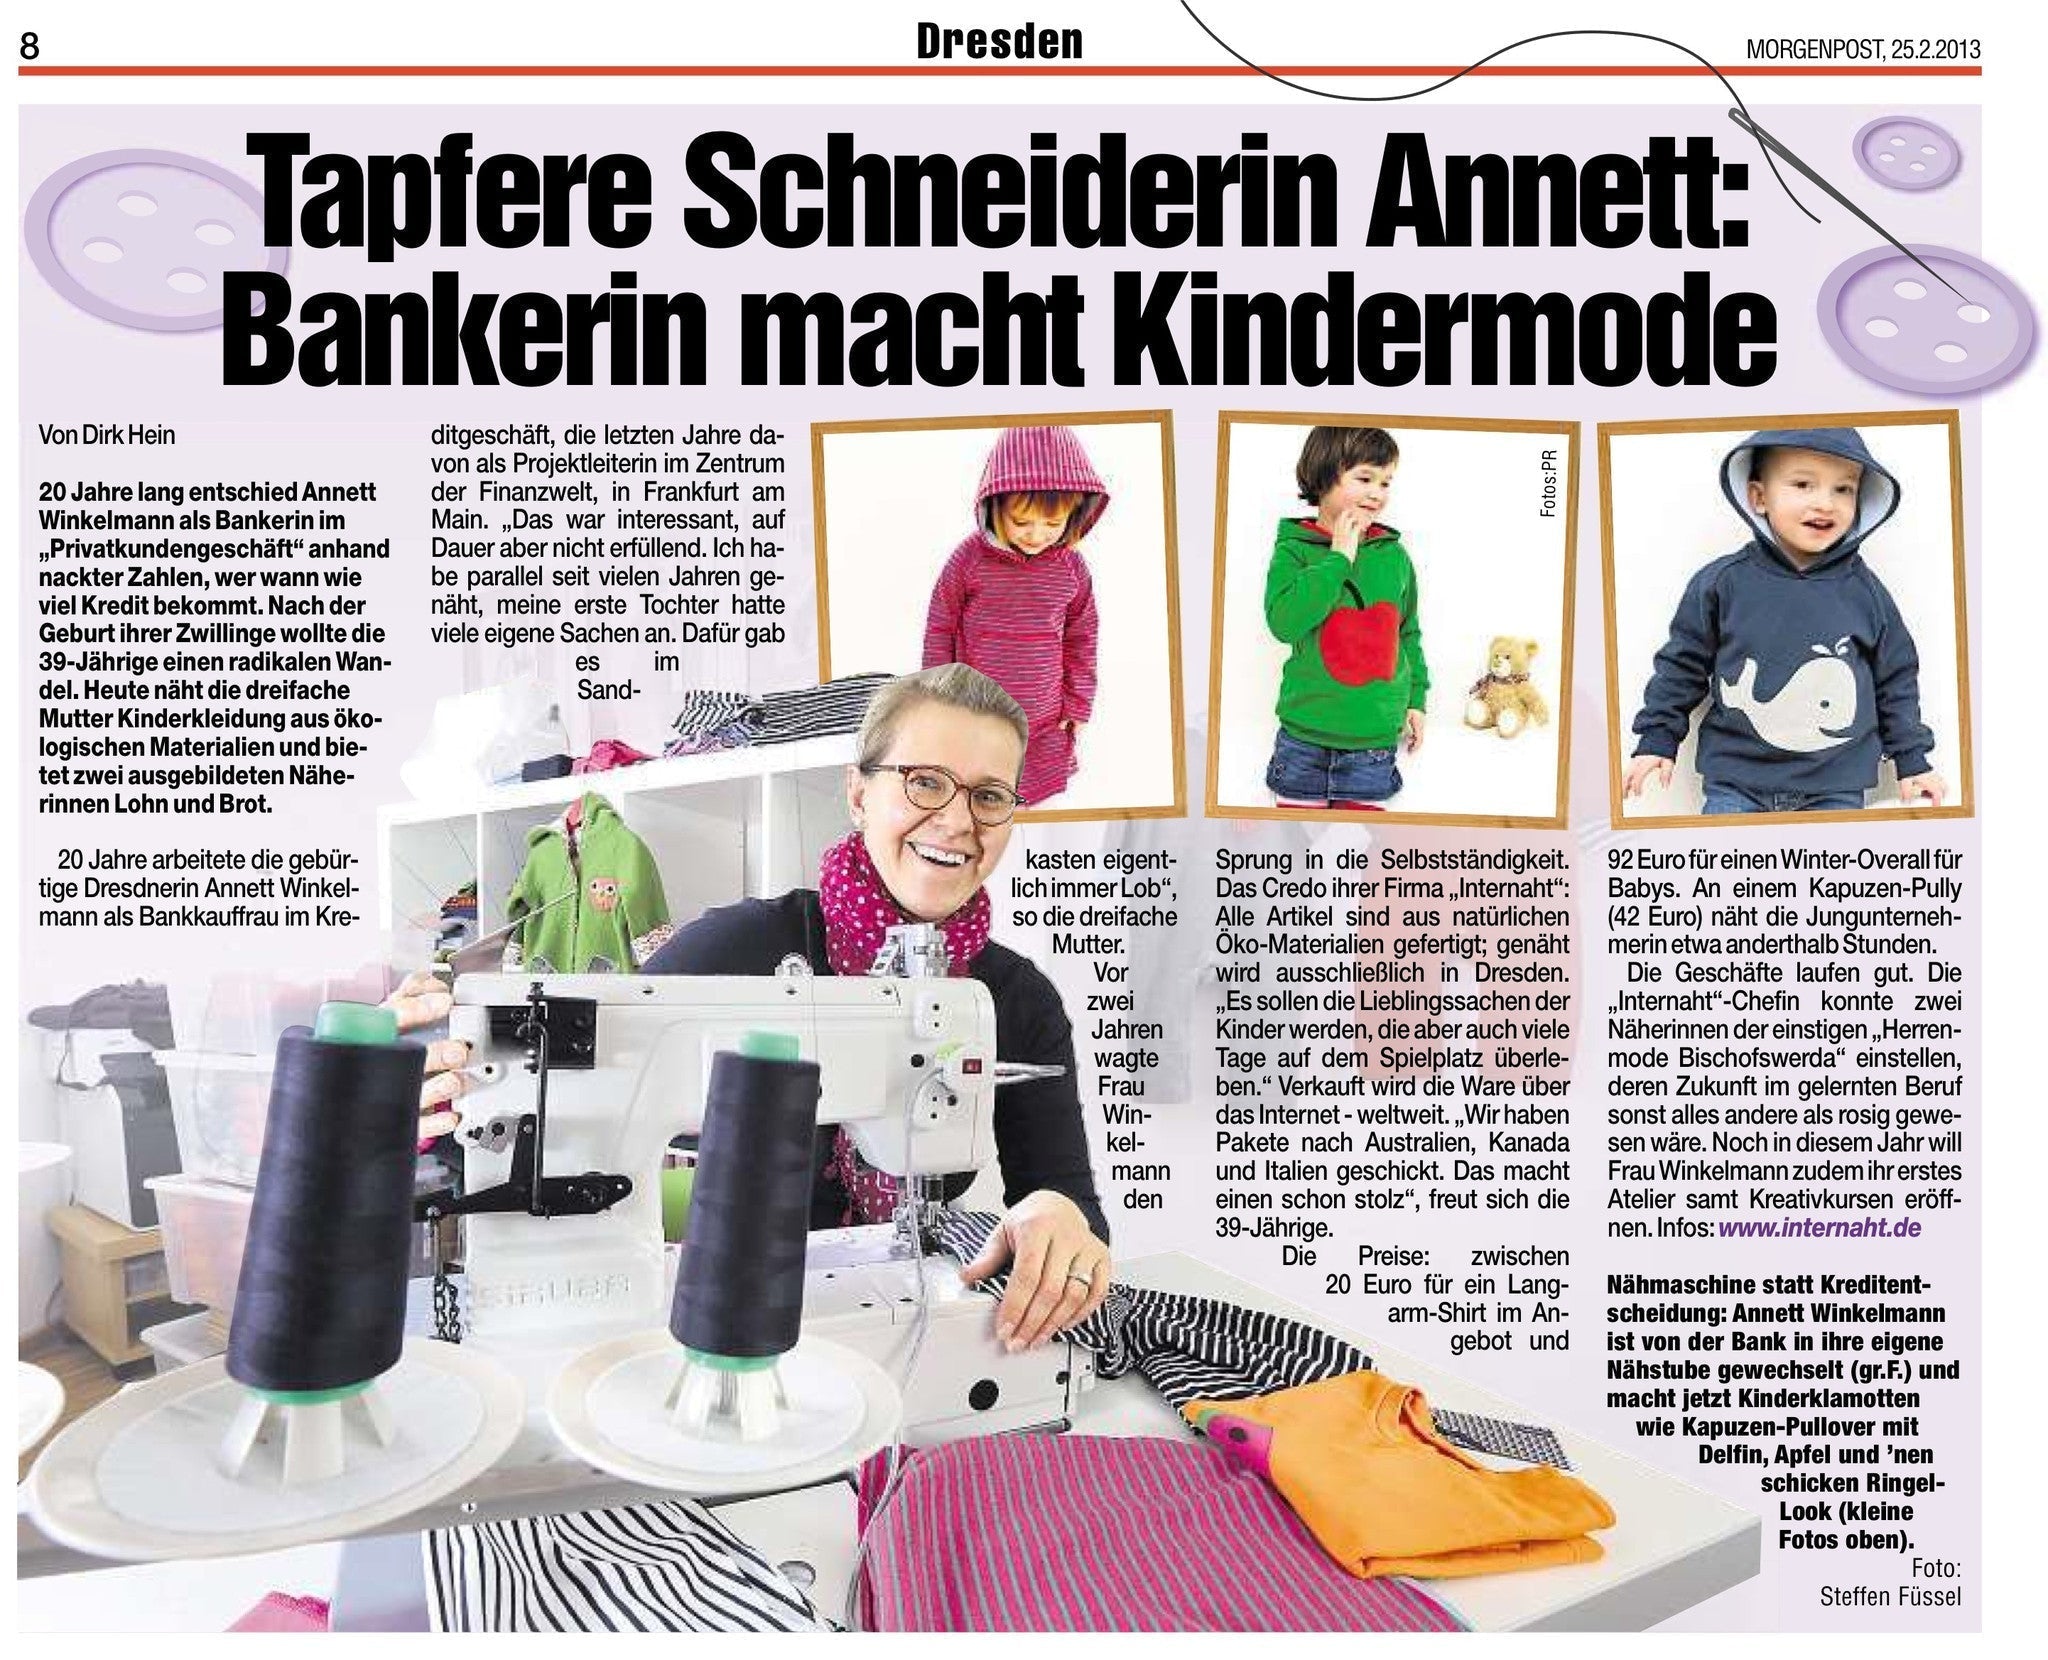 Februar 2013 - Tapfere Schneiderin Annett - internaht in der Dresdener Morgenpost!